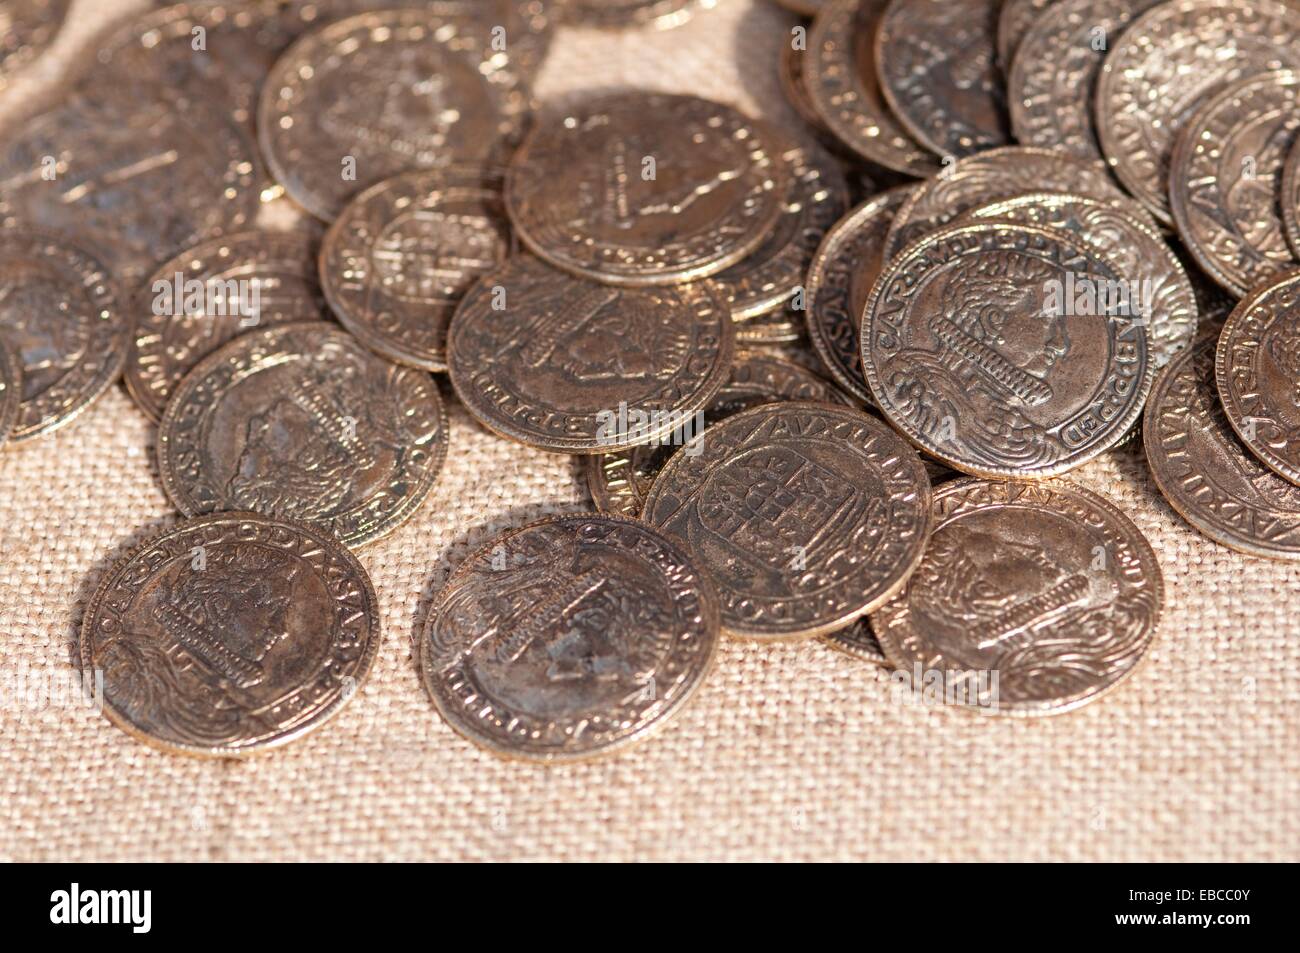 Italia Lombardía recreación histórica medieval de copia de monedas antiguas. Foto de stock